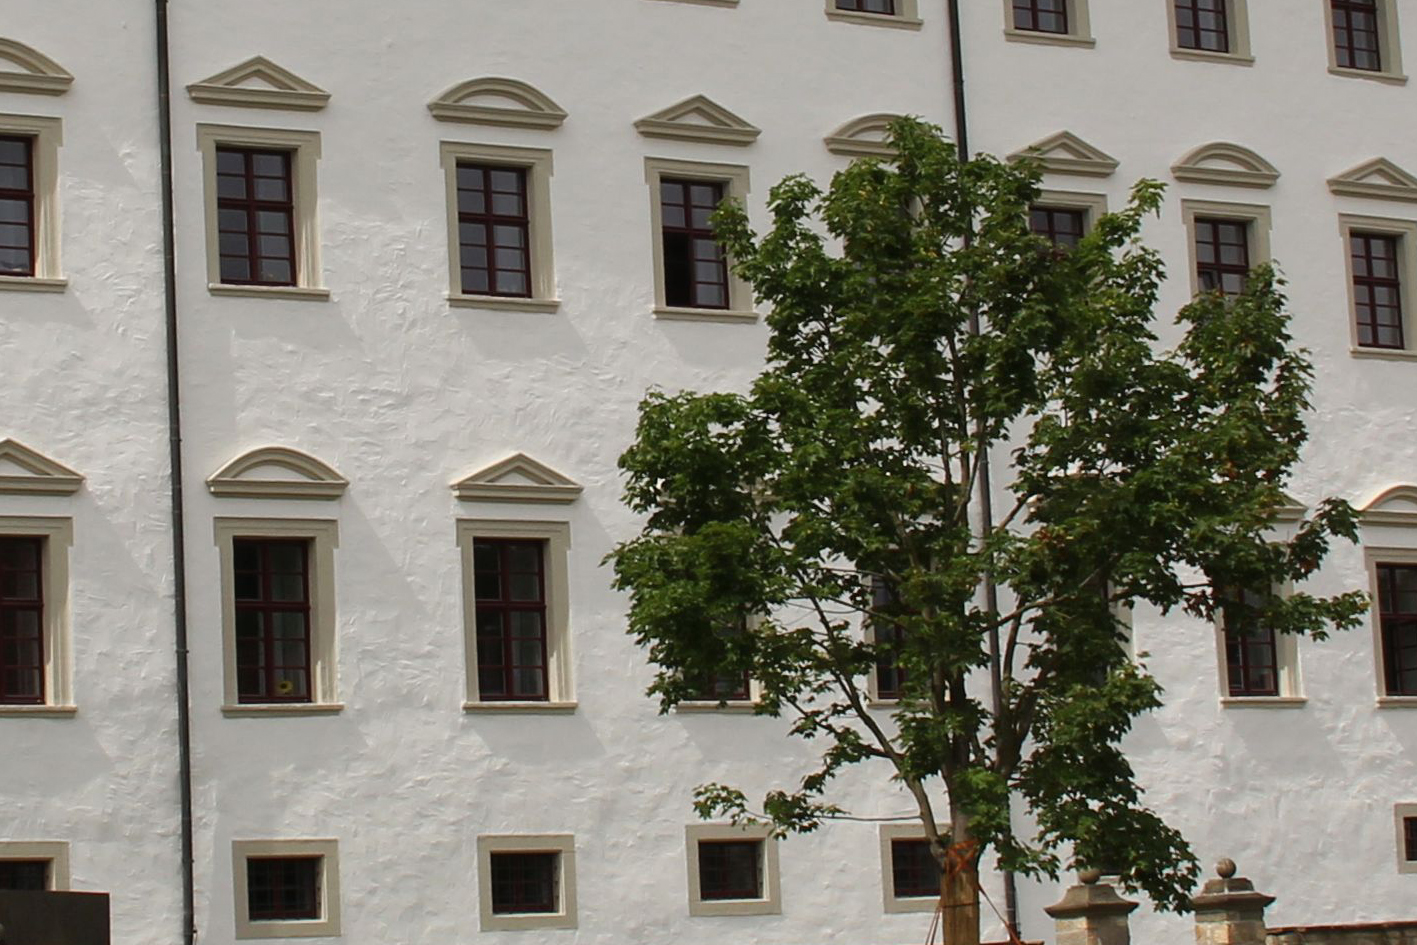 Bischoefliches Palais, Rottenburg